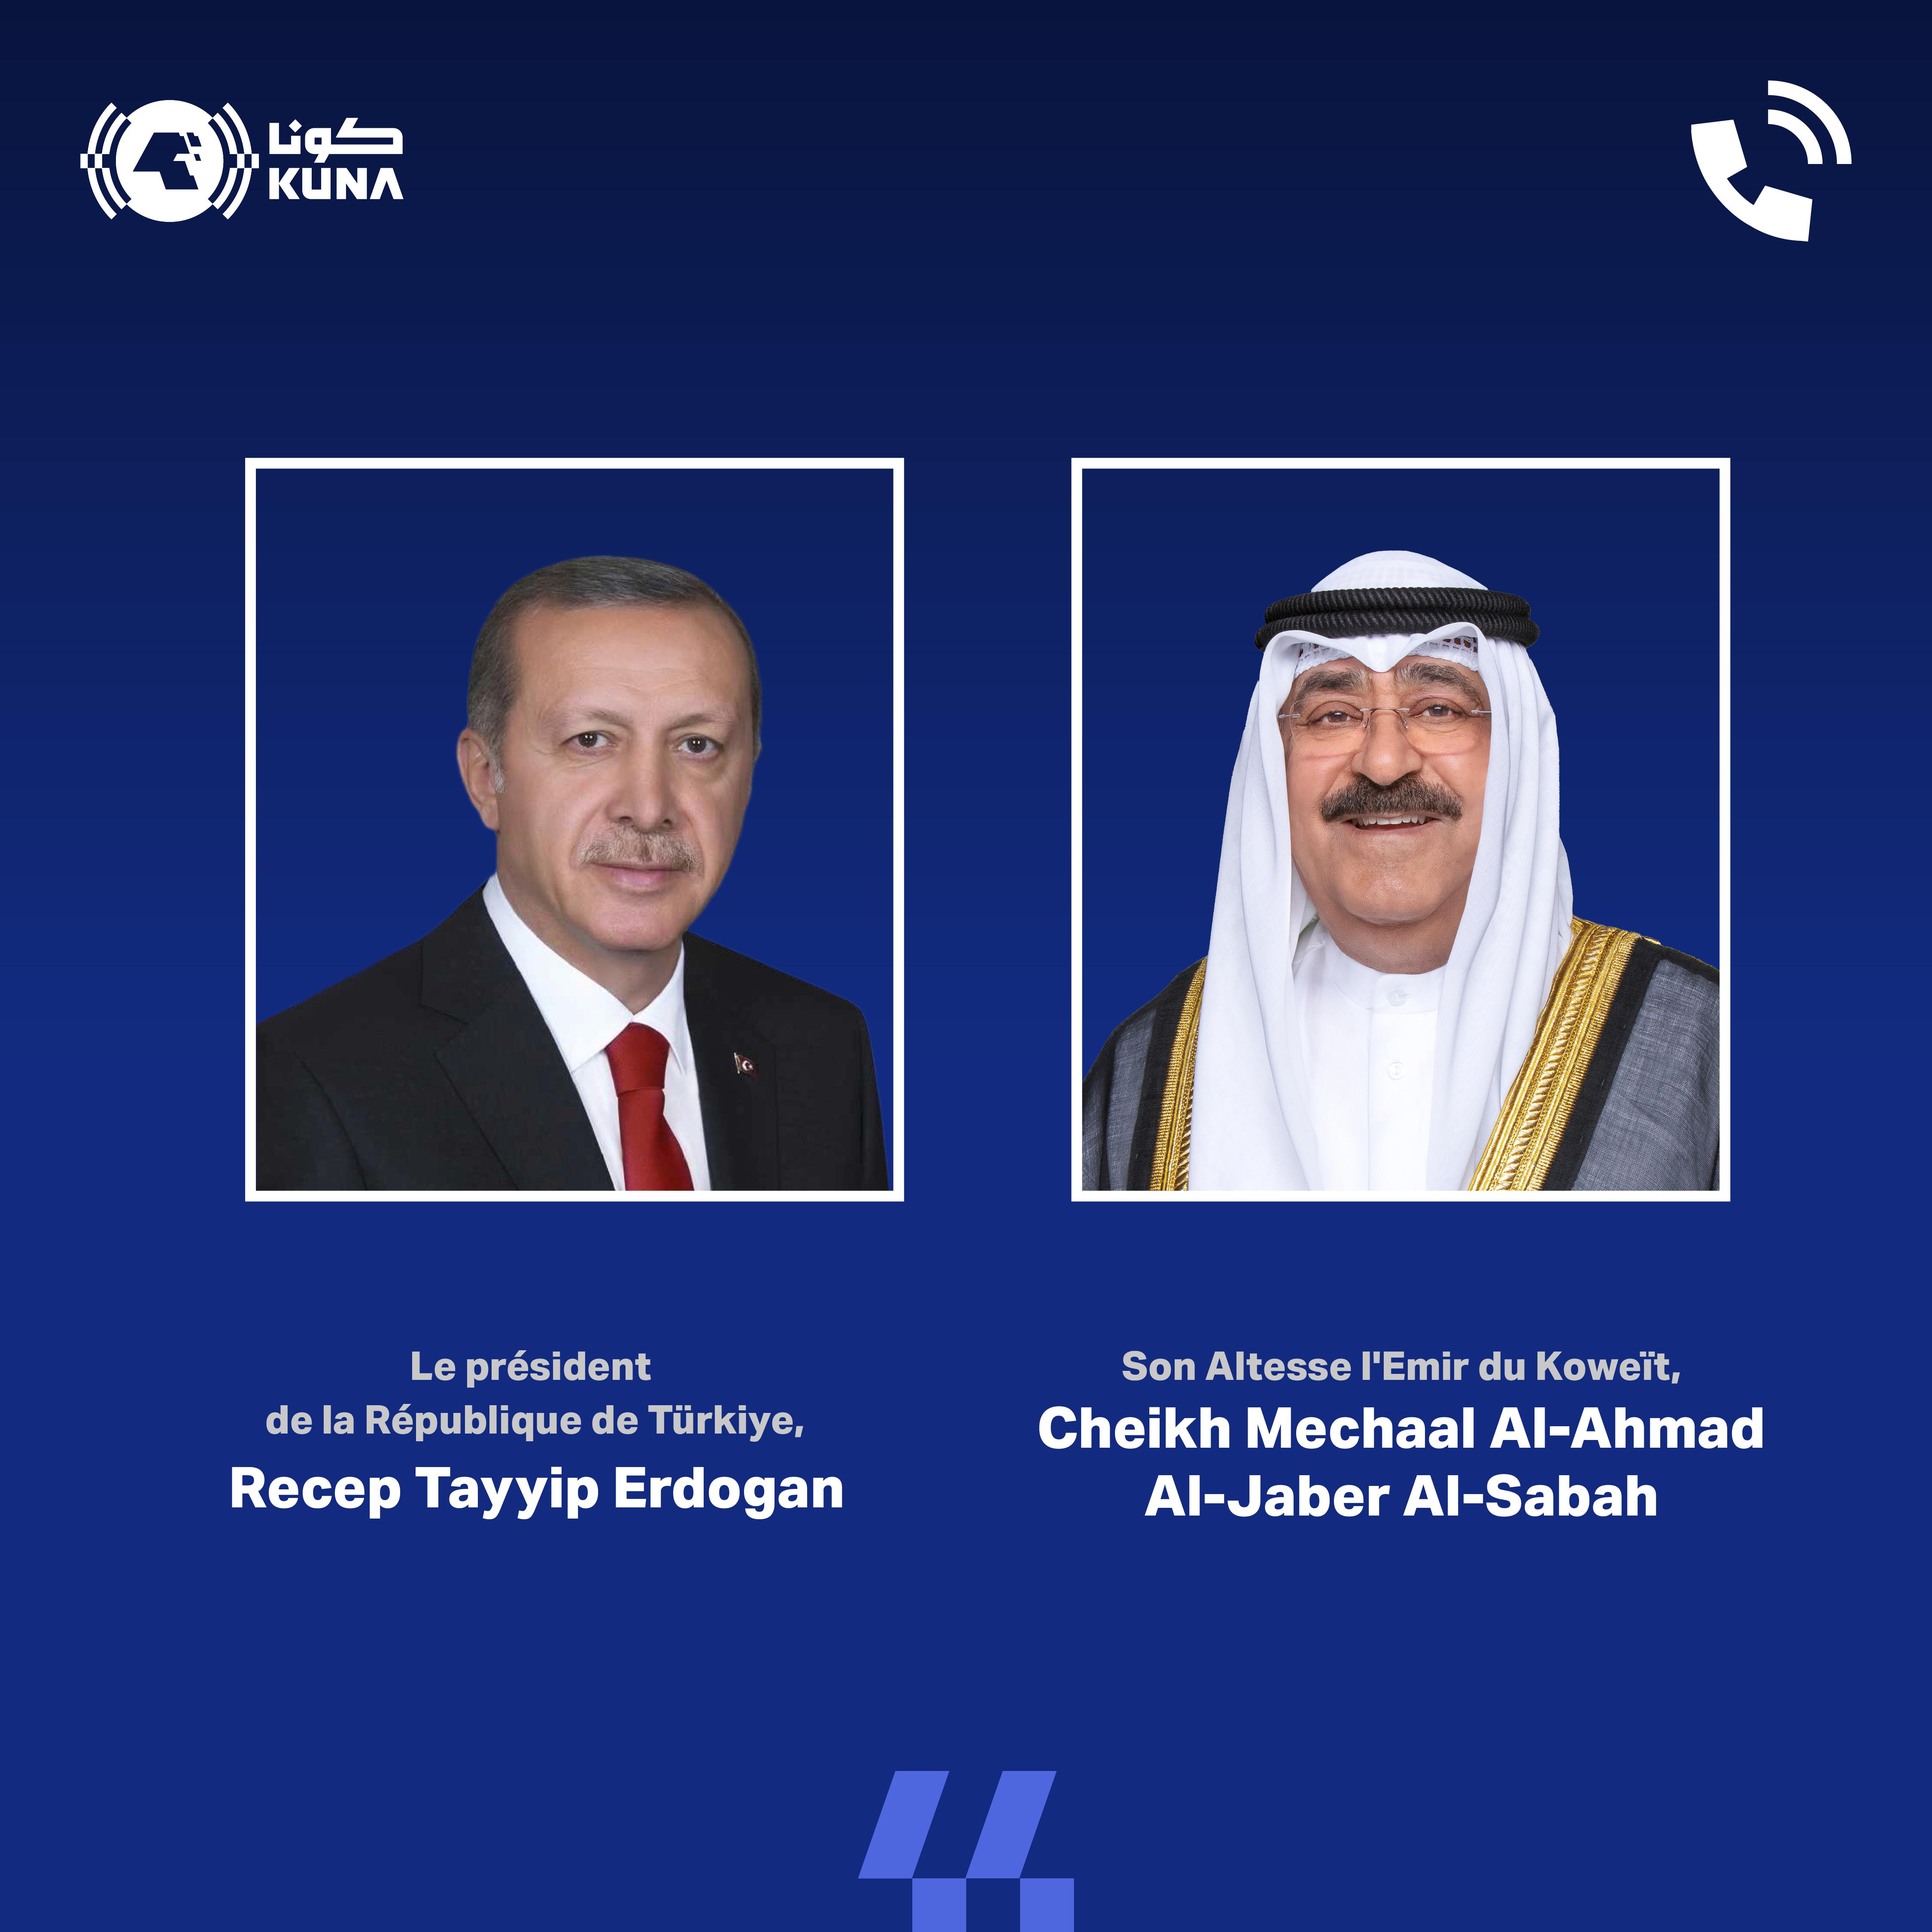 Le Türkiye réaffirme son soutien à la souveraineté du Koweït